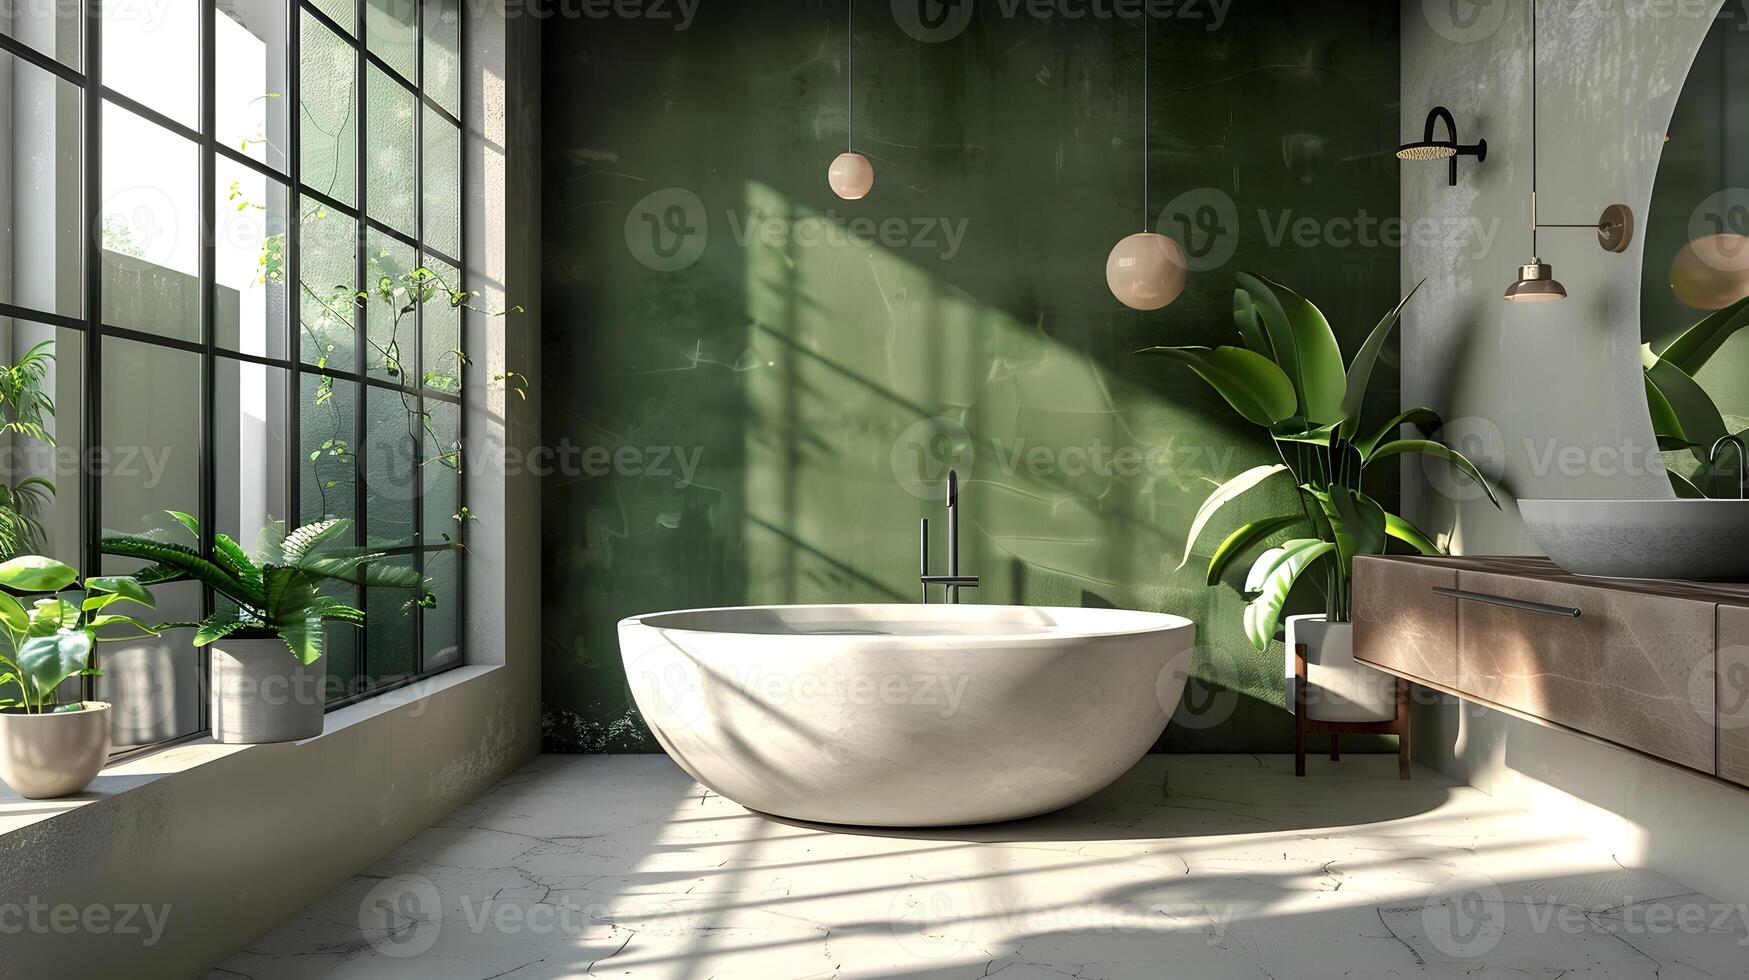 moderno baño oasis un redondo bañera anidado en contra un Rico verde musgo pared abrazado por luz foto